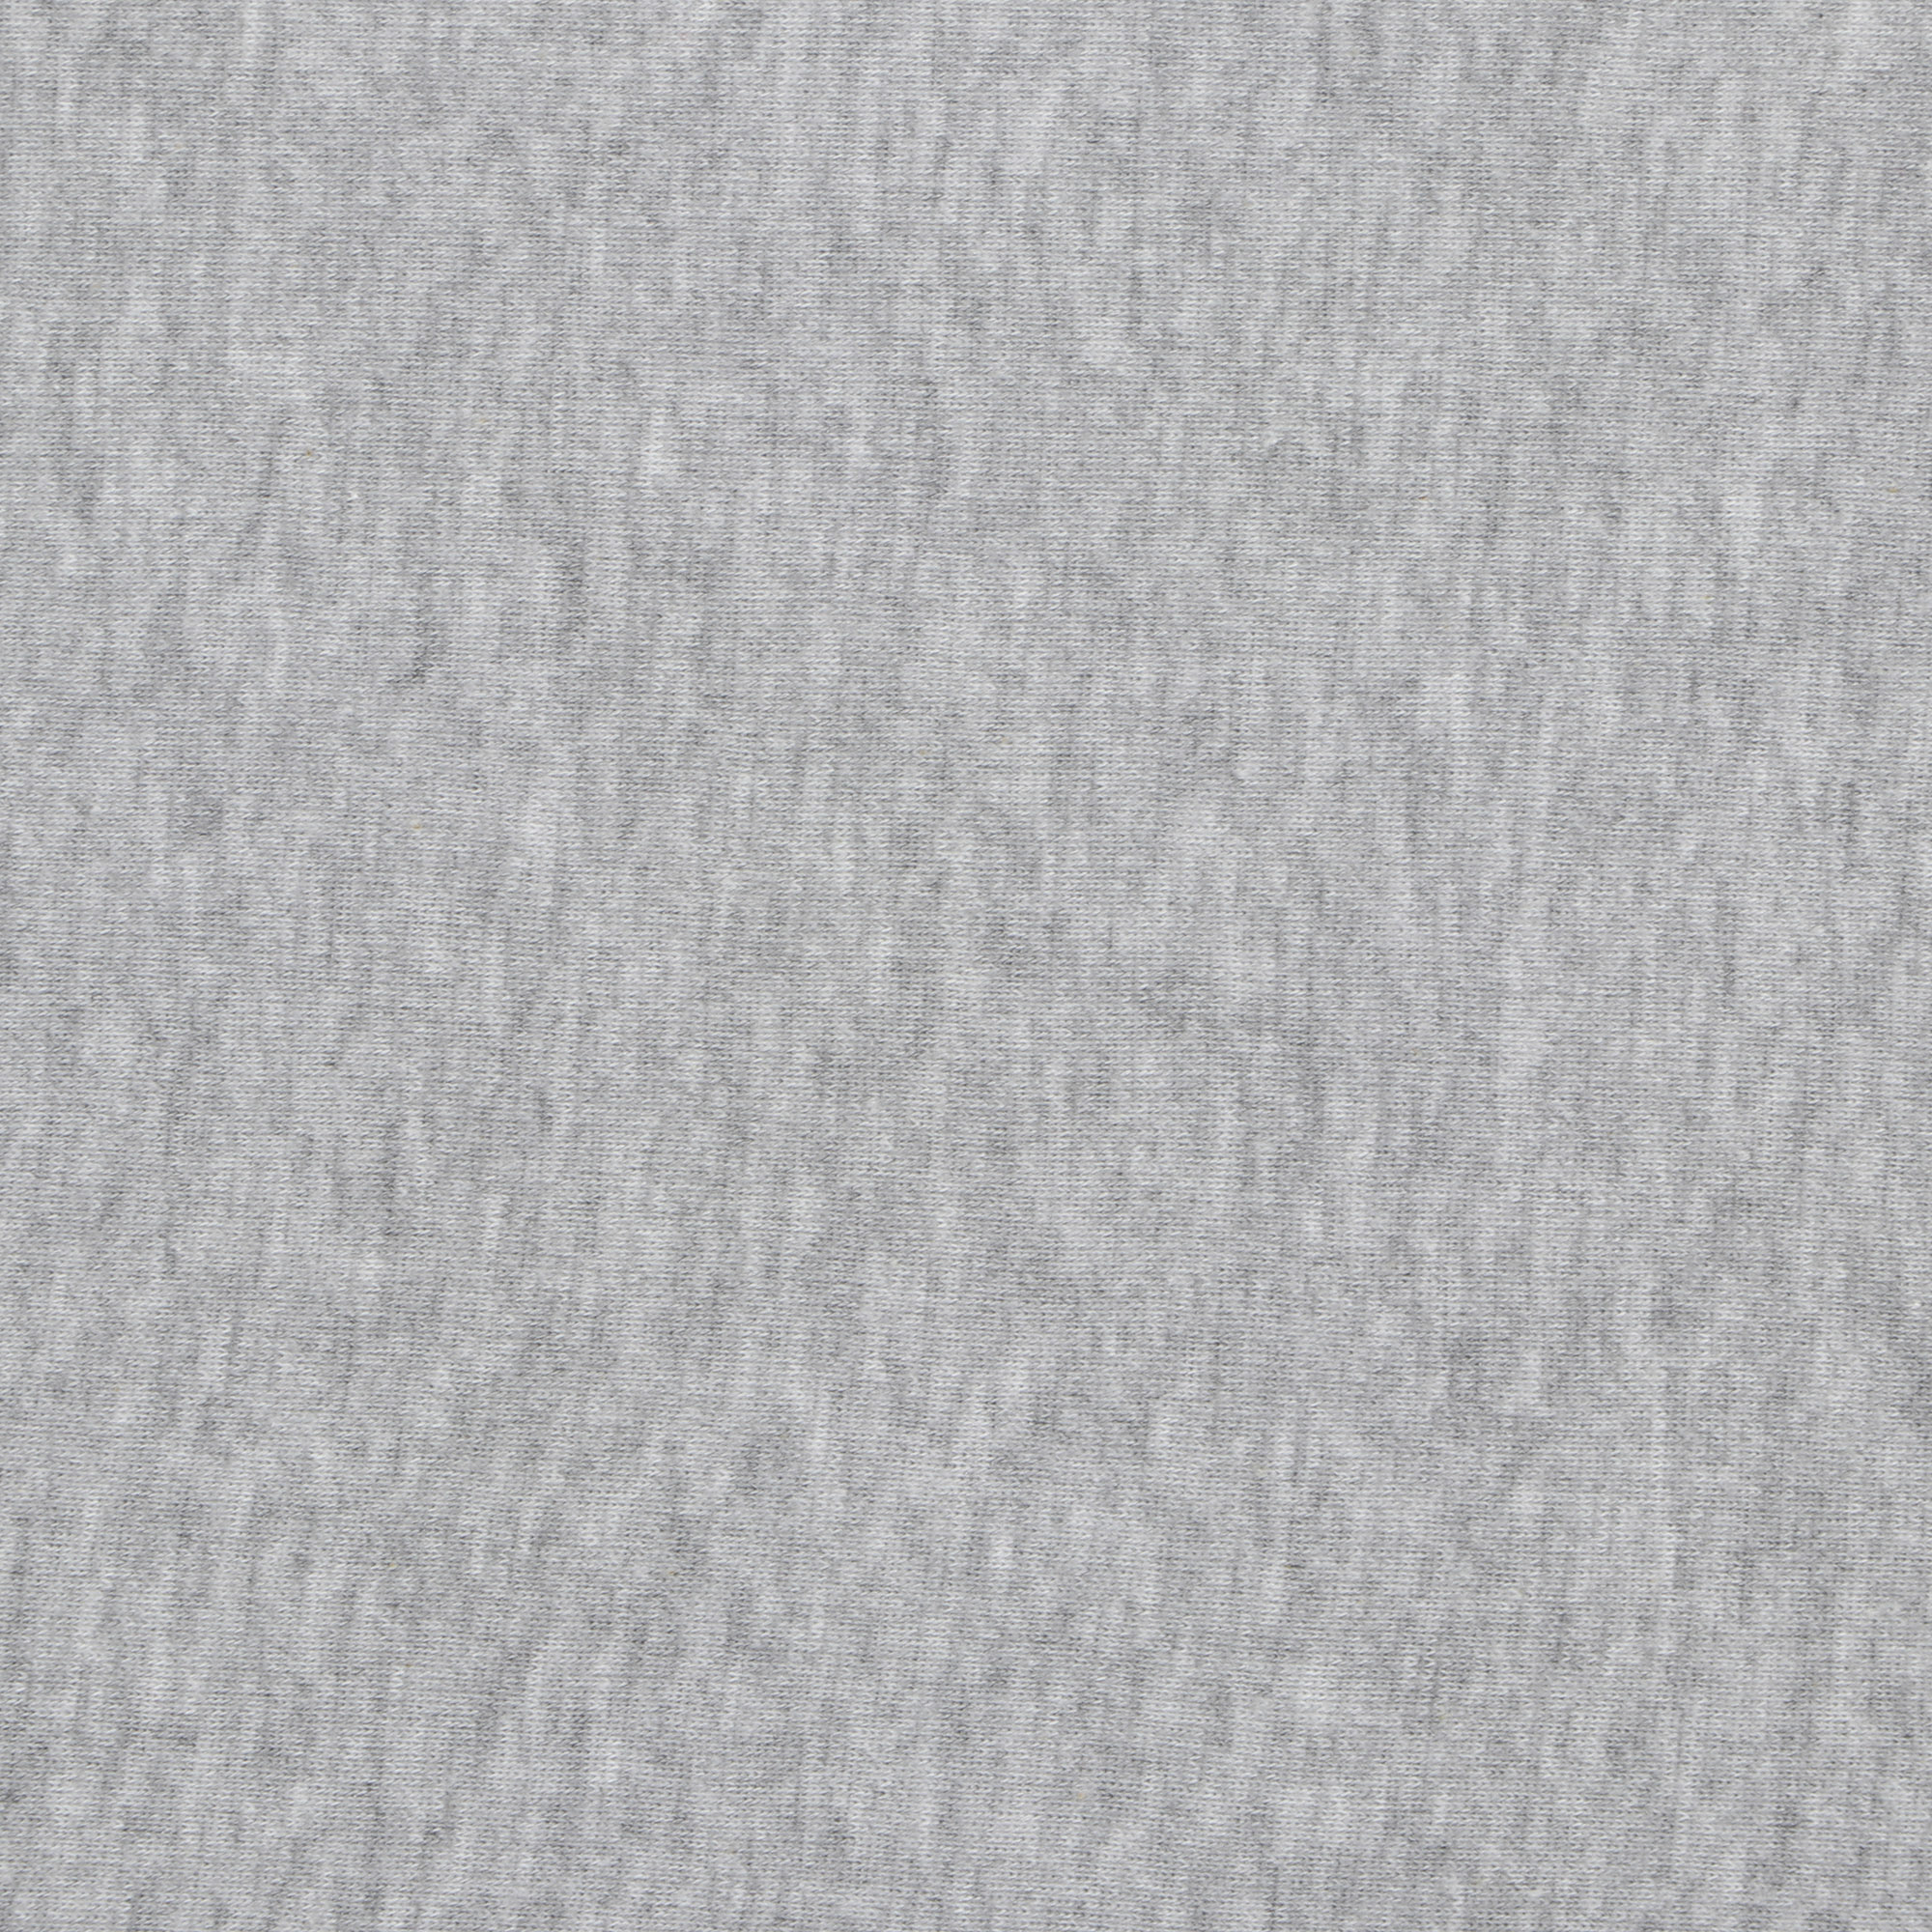 Футболка мужская Pantelemone 52 серая, цвет серый, размер 52 - фото 3